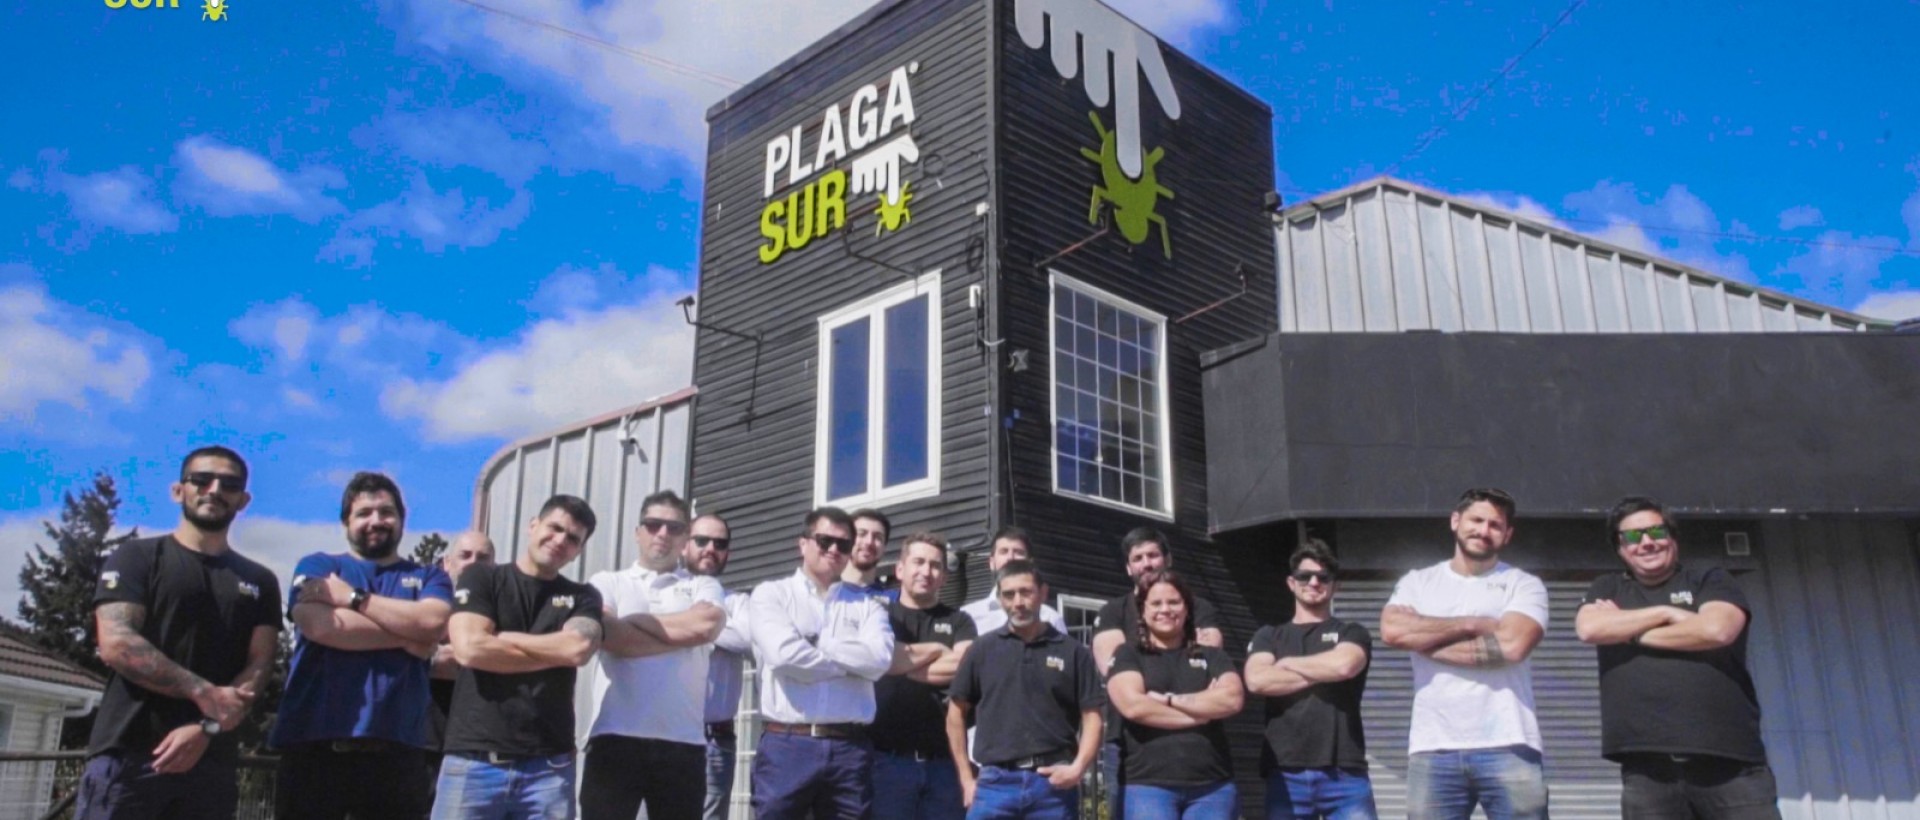  - PLAGASUR® | Control de Plagas en Puerto Montt - Puerto Varas - Osorno - Castro